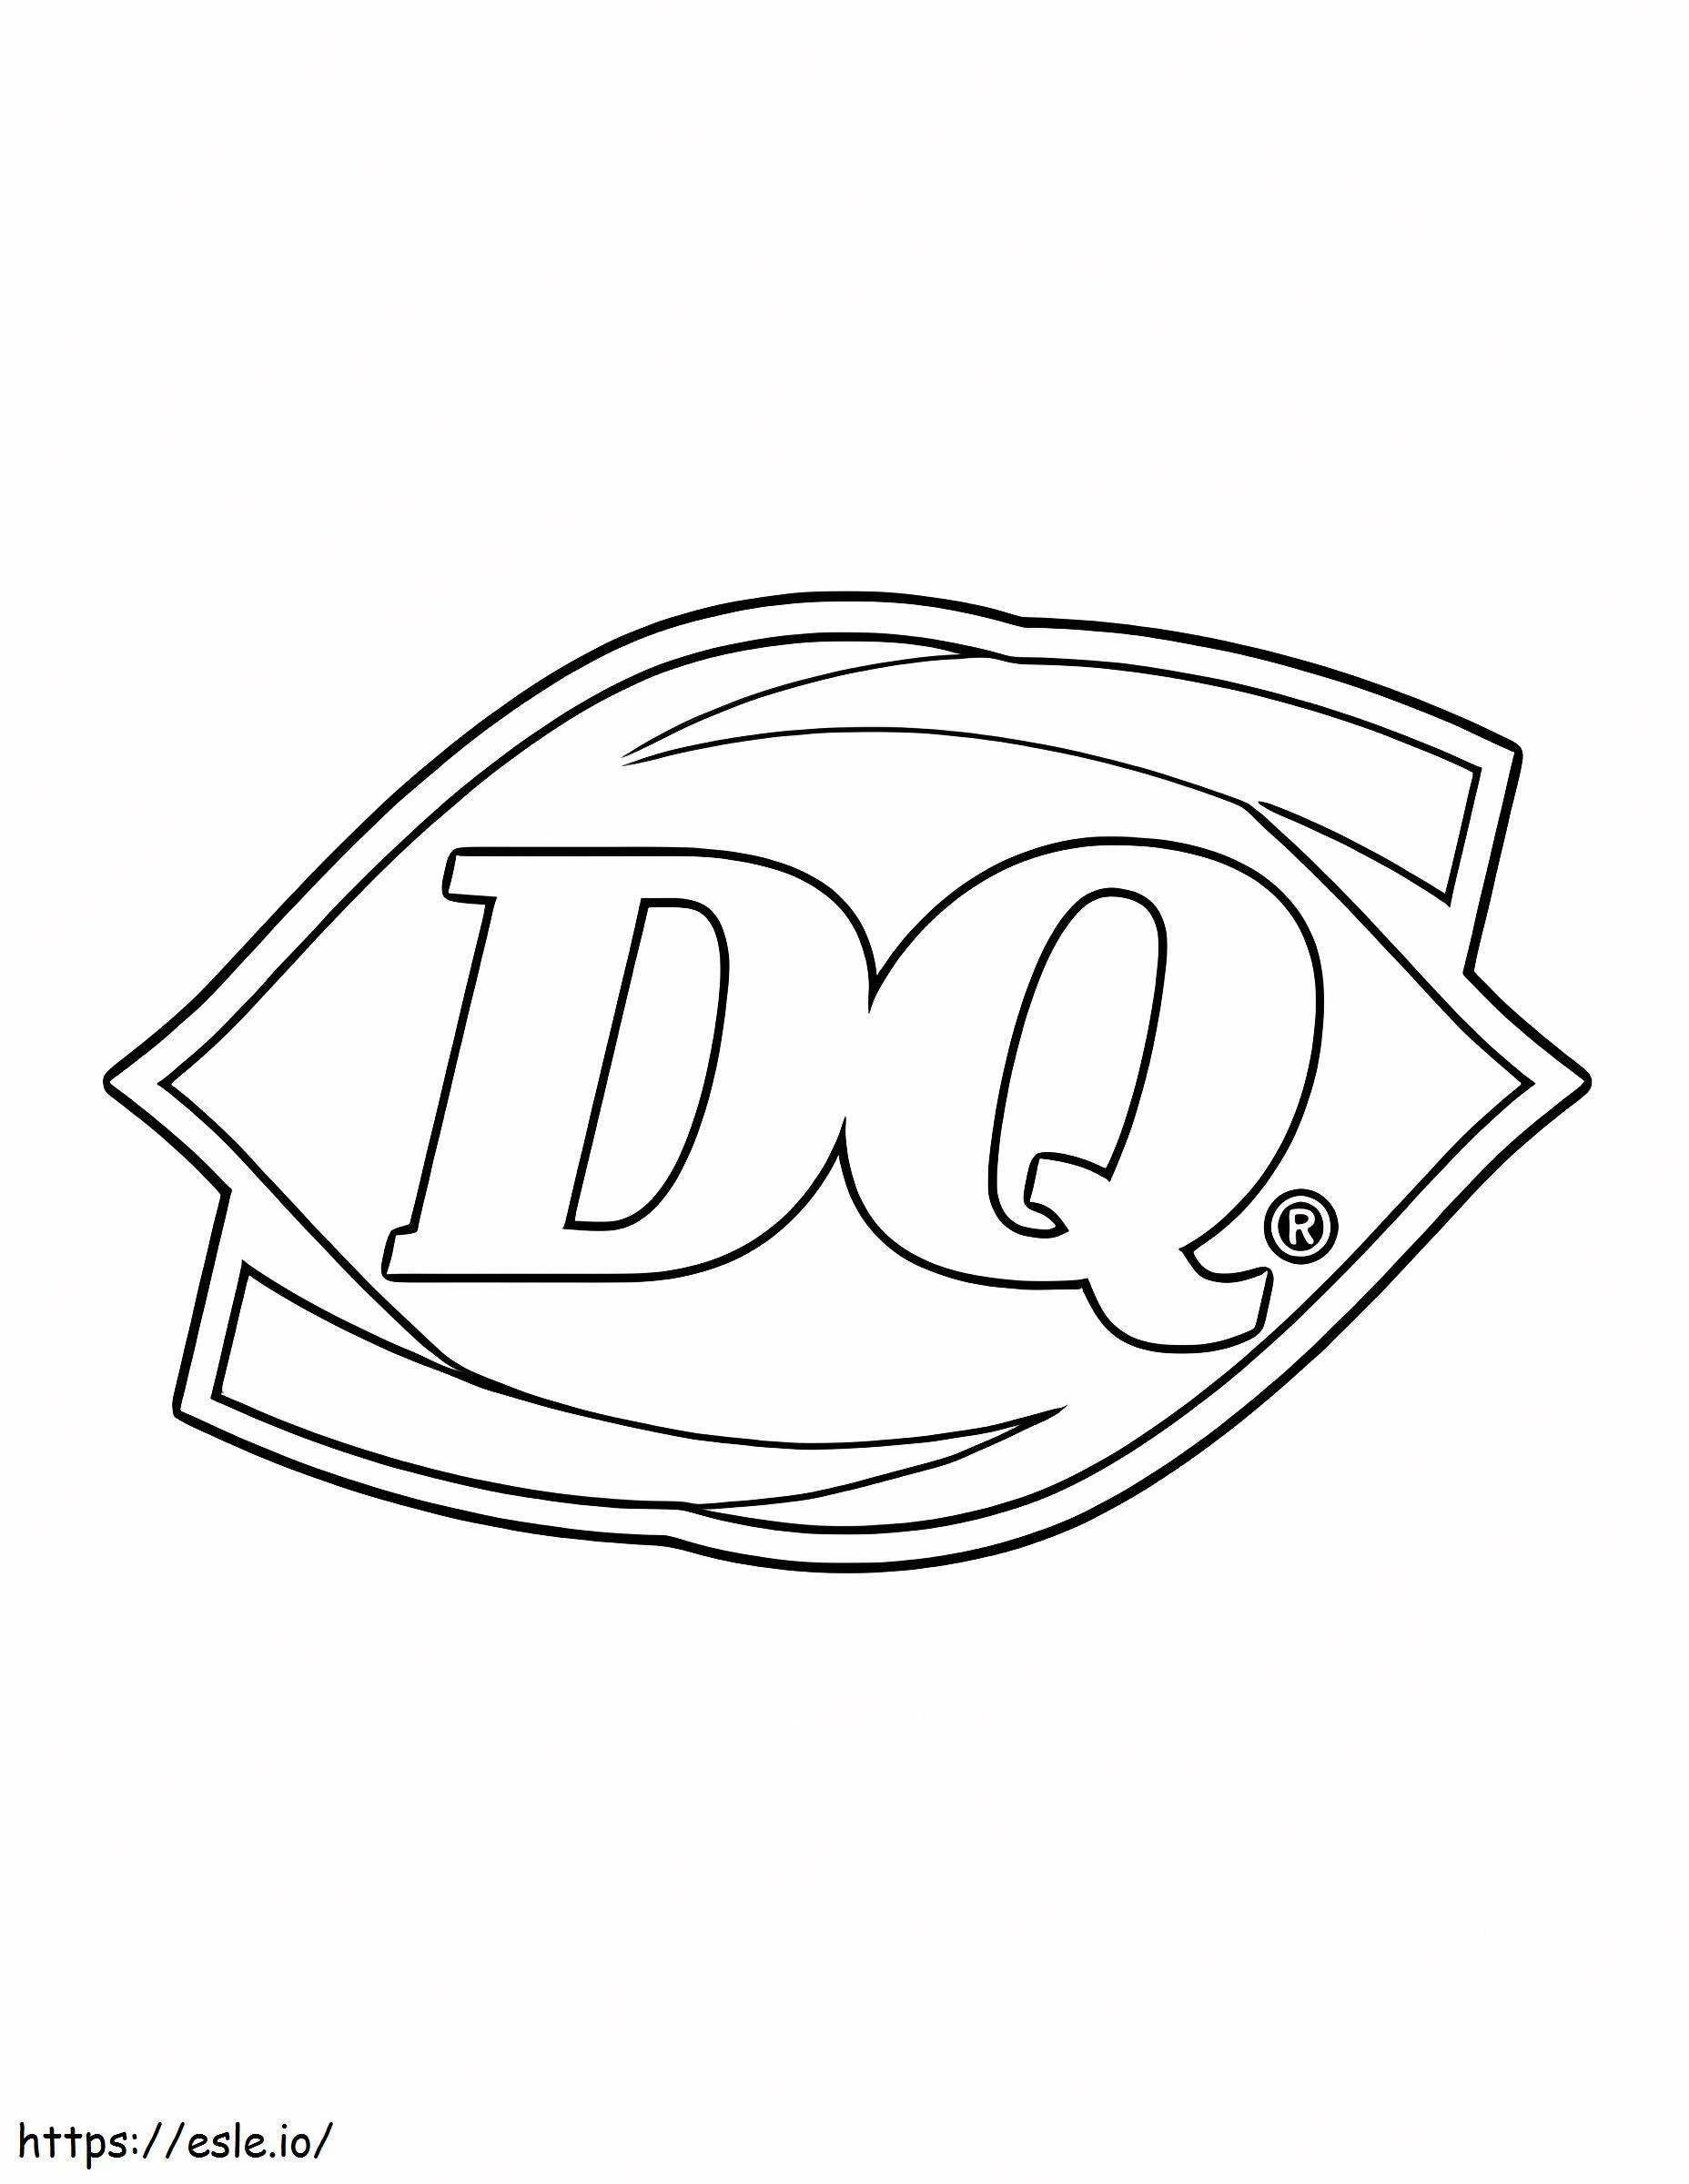 Logo DQ ausmalbilder